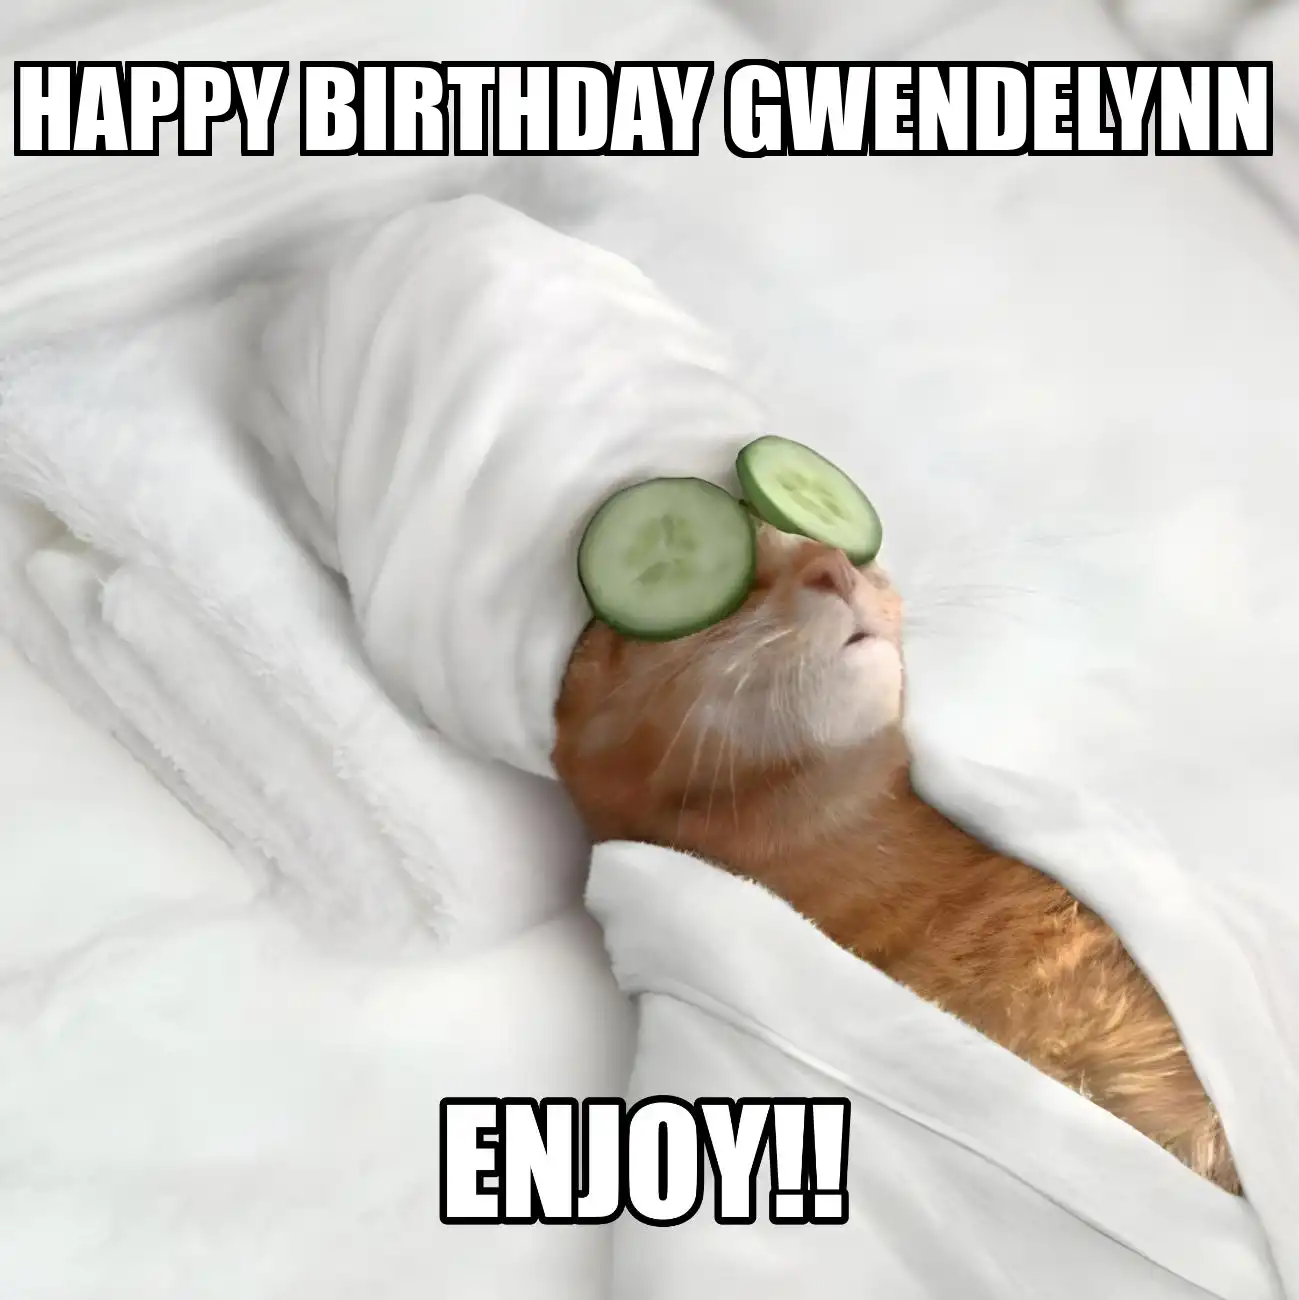 Happy Birthday Gwendelynn Enjoy Cat Meme